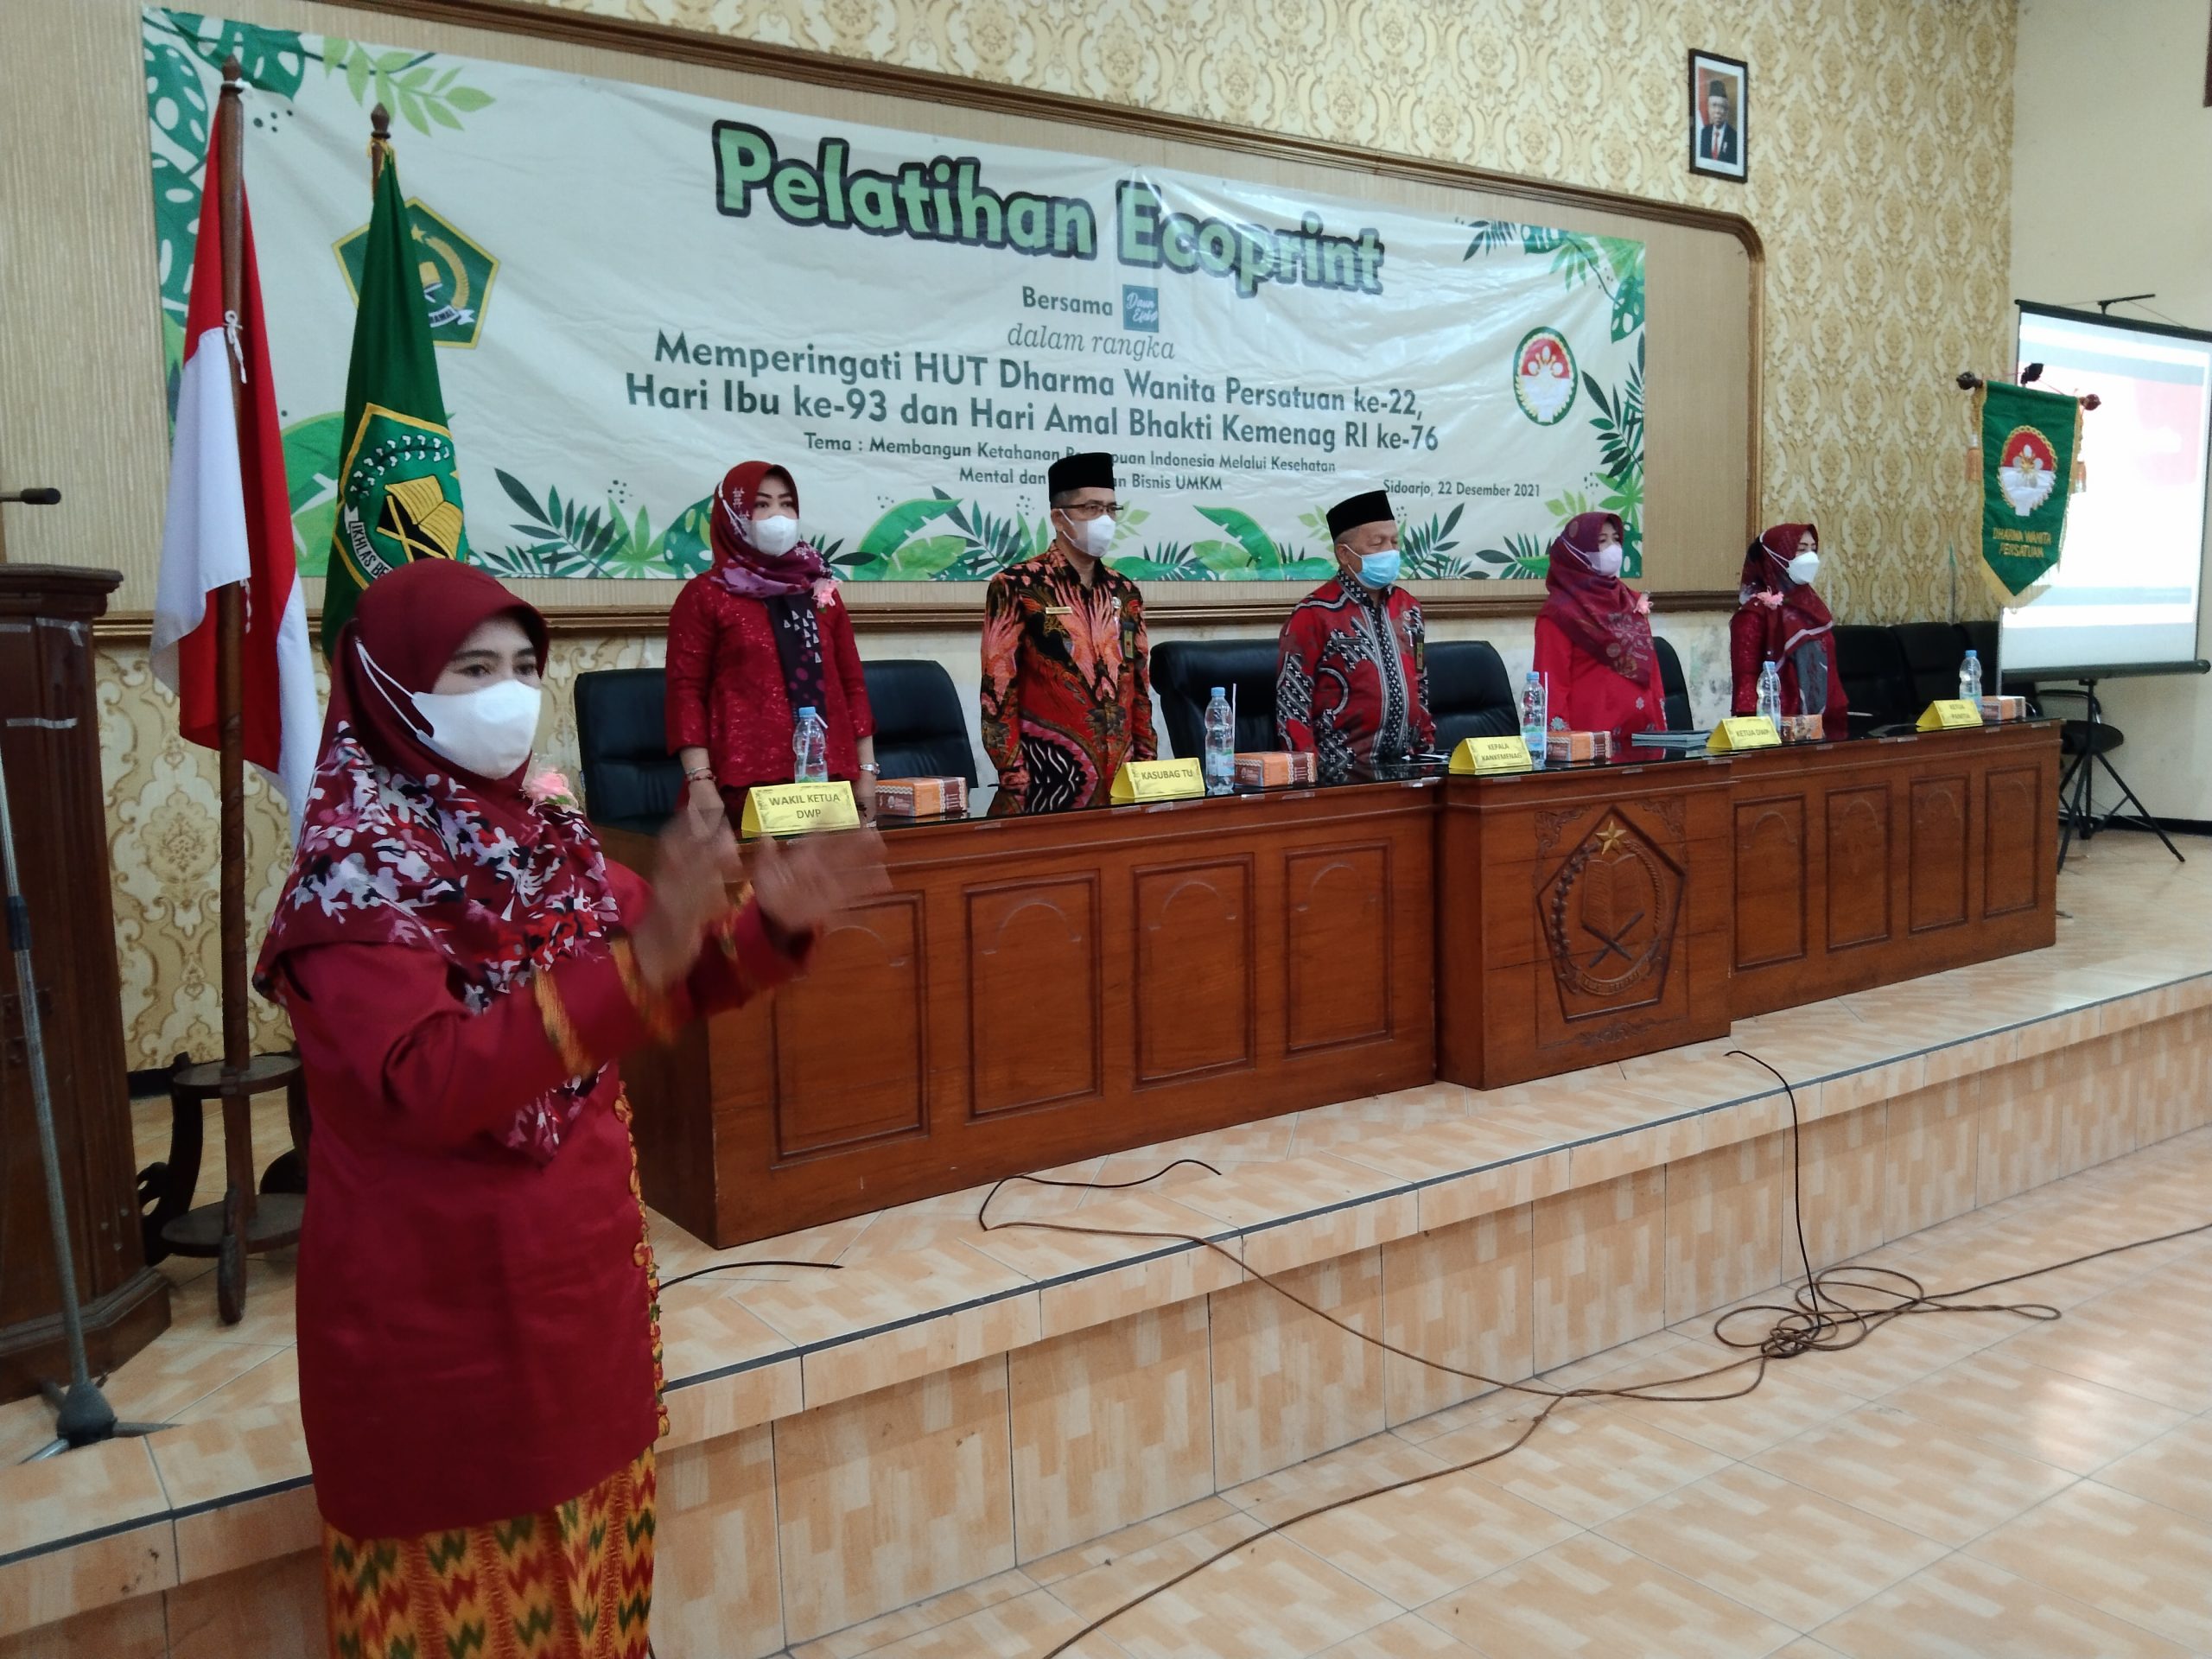 Pelatihan Ecoprint untuk Membangun Ketahanan Perempuan Indonesia